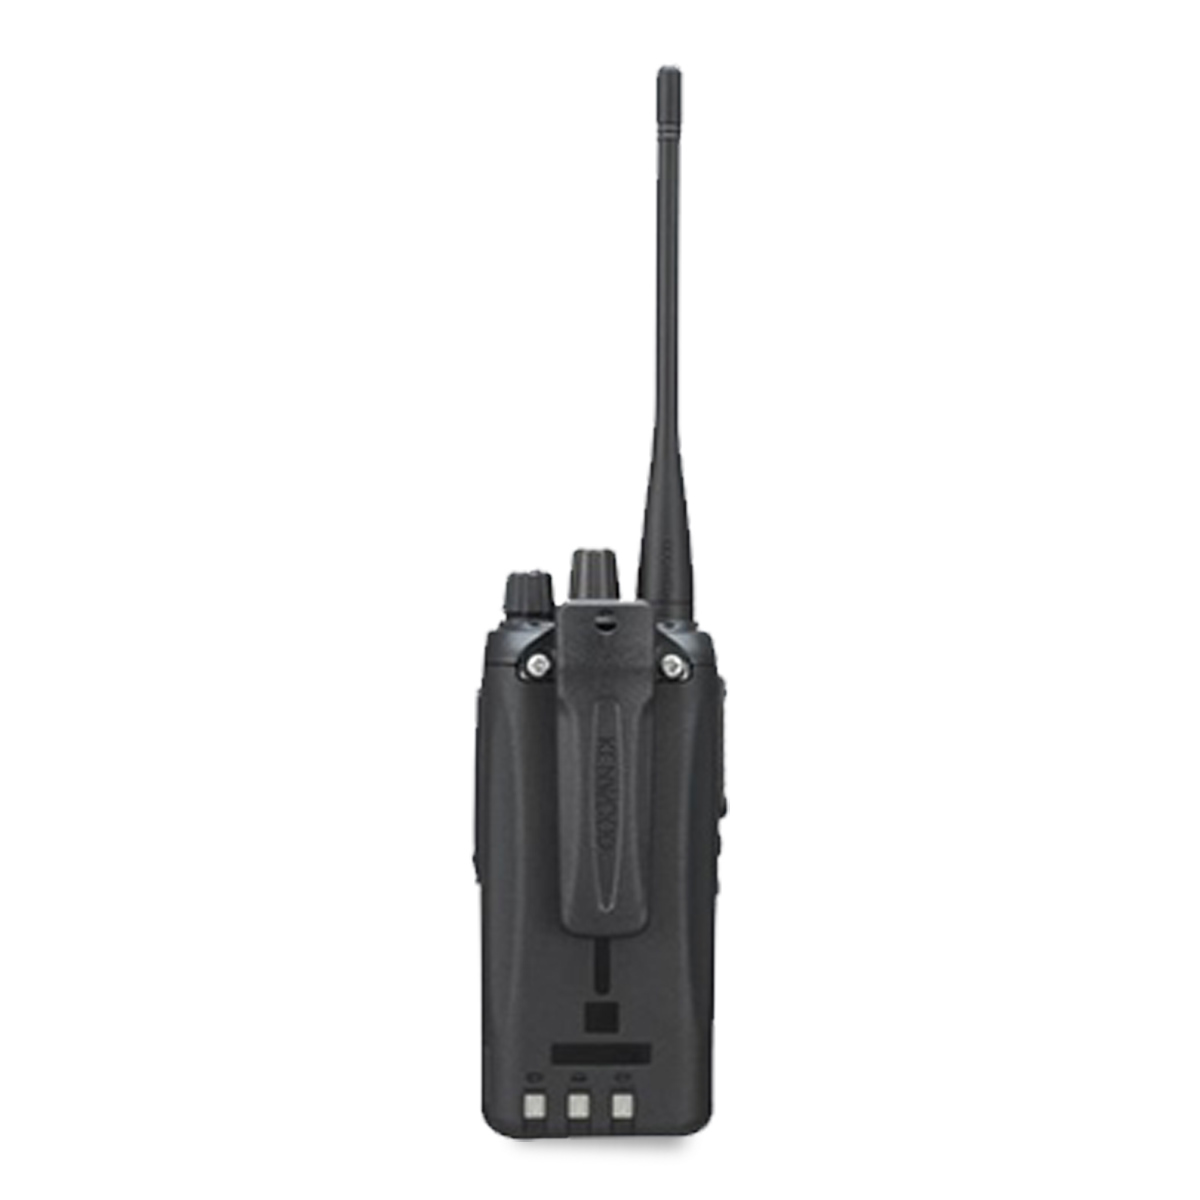 Radio KENWOOD NX-1200 Digital VHF 136-174 MHz con pantalla y teclado limitado